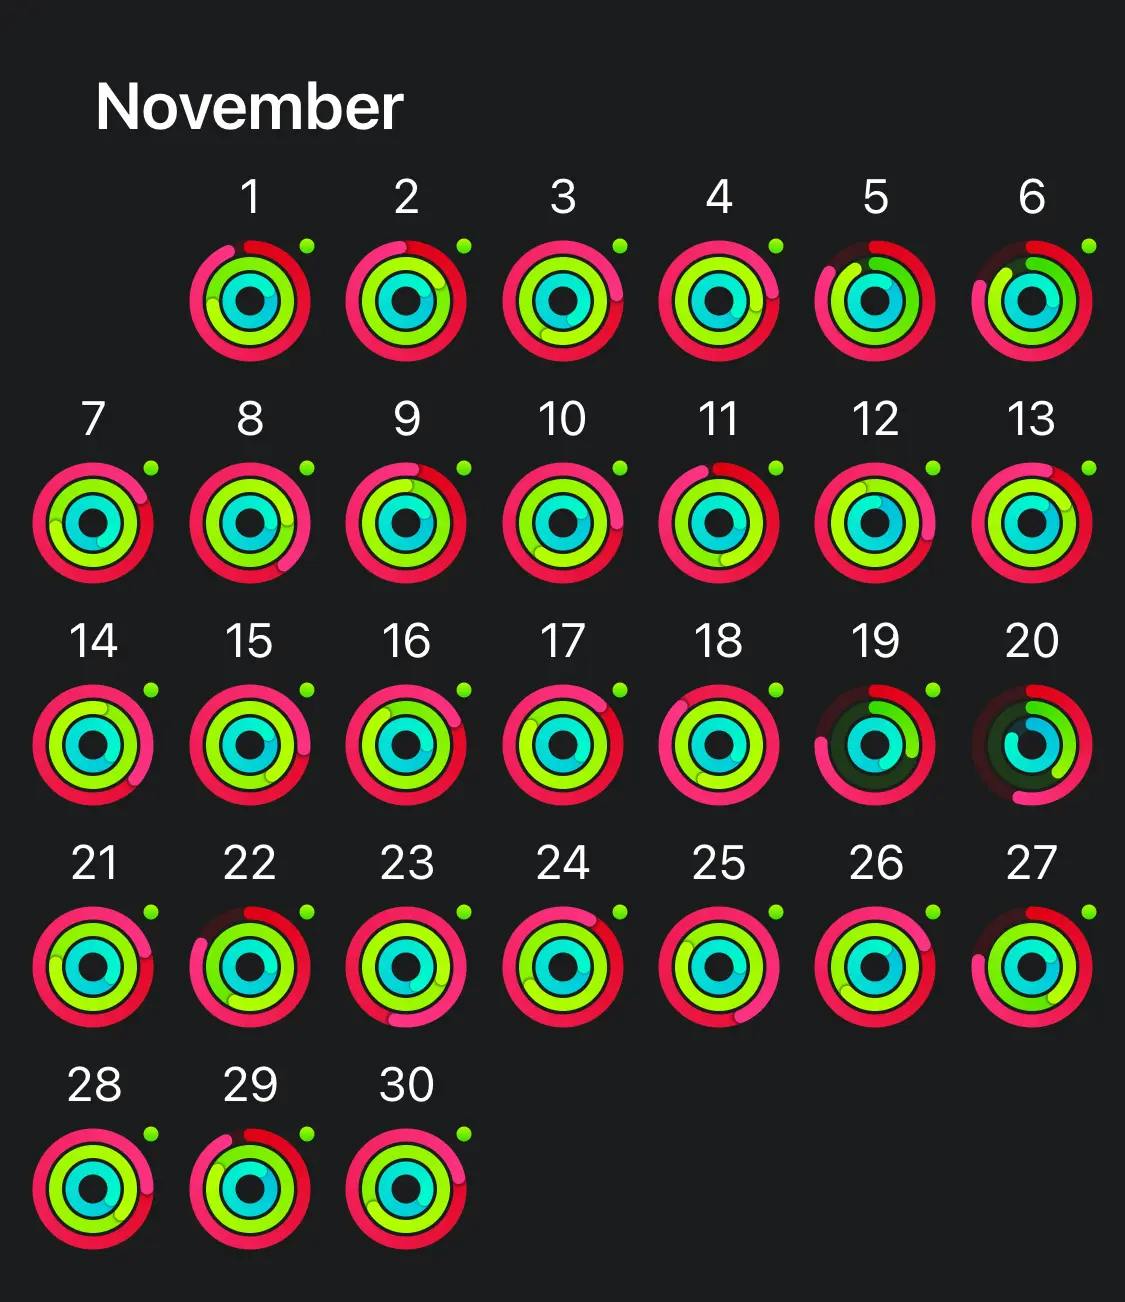 image of apple watch rings of november 2022